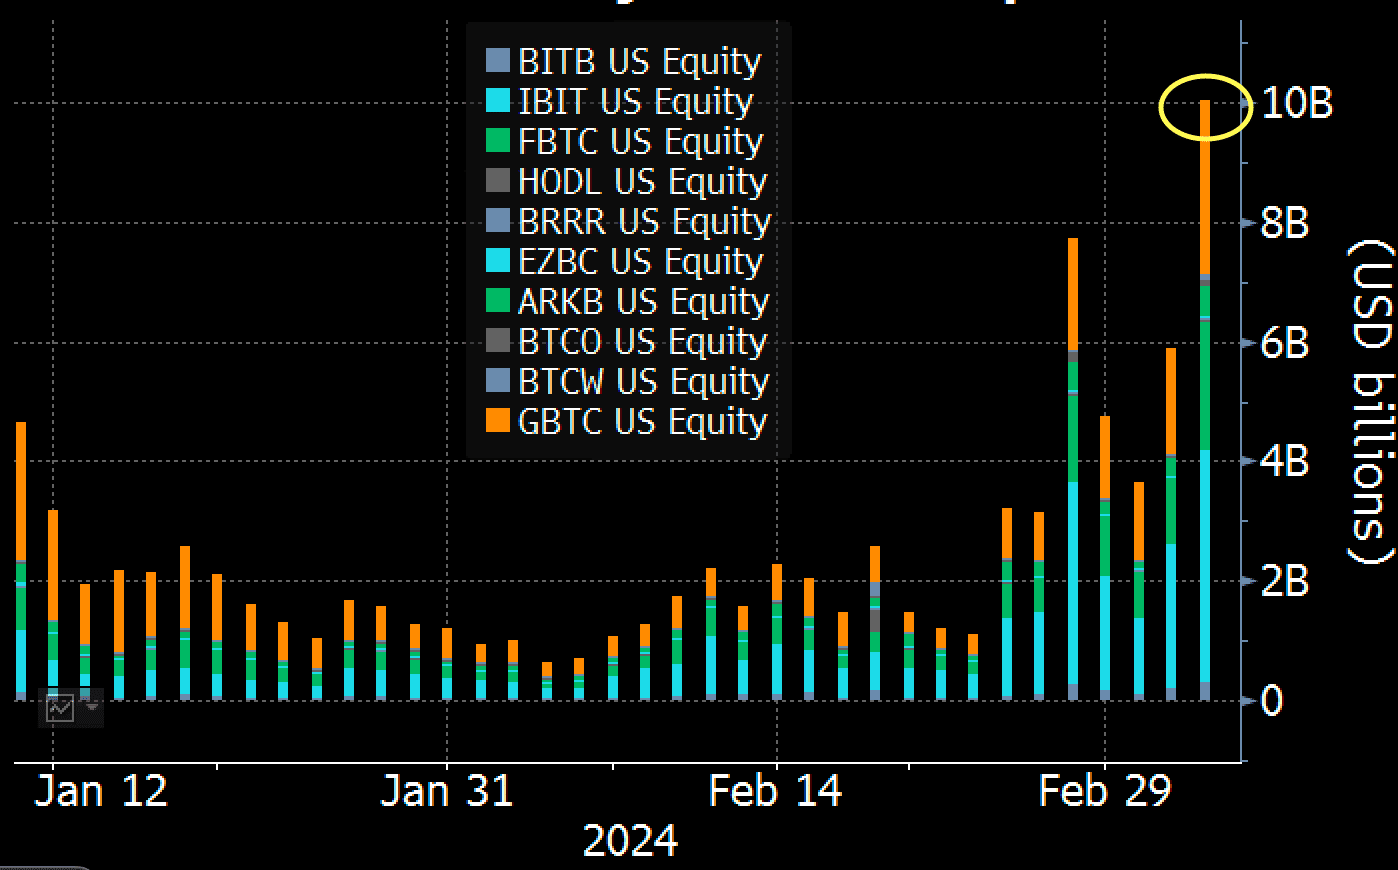 Биткоин-ETF достигли рекордных объемов торгов в 10 миллиардов долларов на фоне волатильности цен на BTC